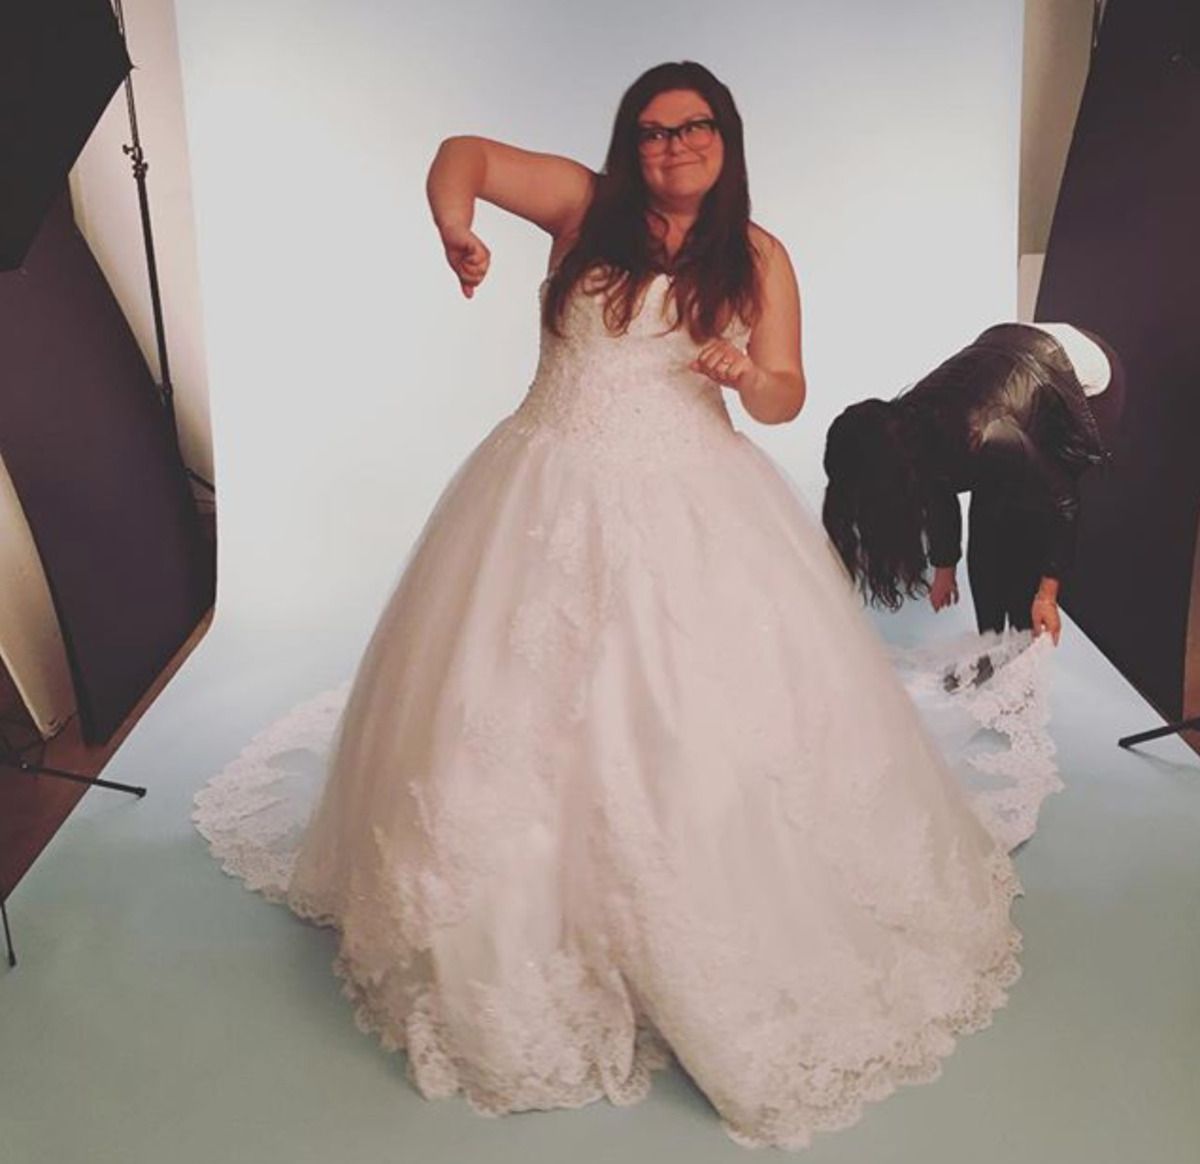 Блогерка зняла лайфхак, як користуватися вбиральнею у весільній сукні — почніть тренуватися вже зараз. Це досить нелегко.